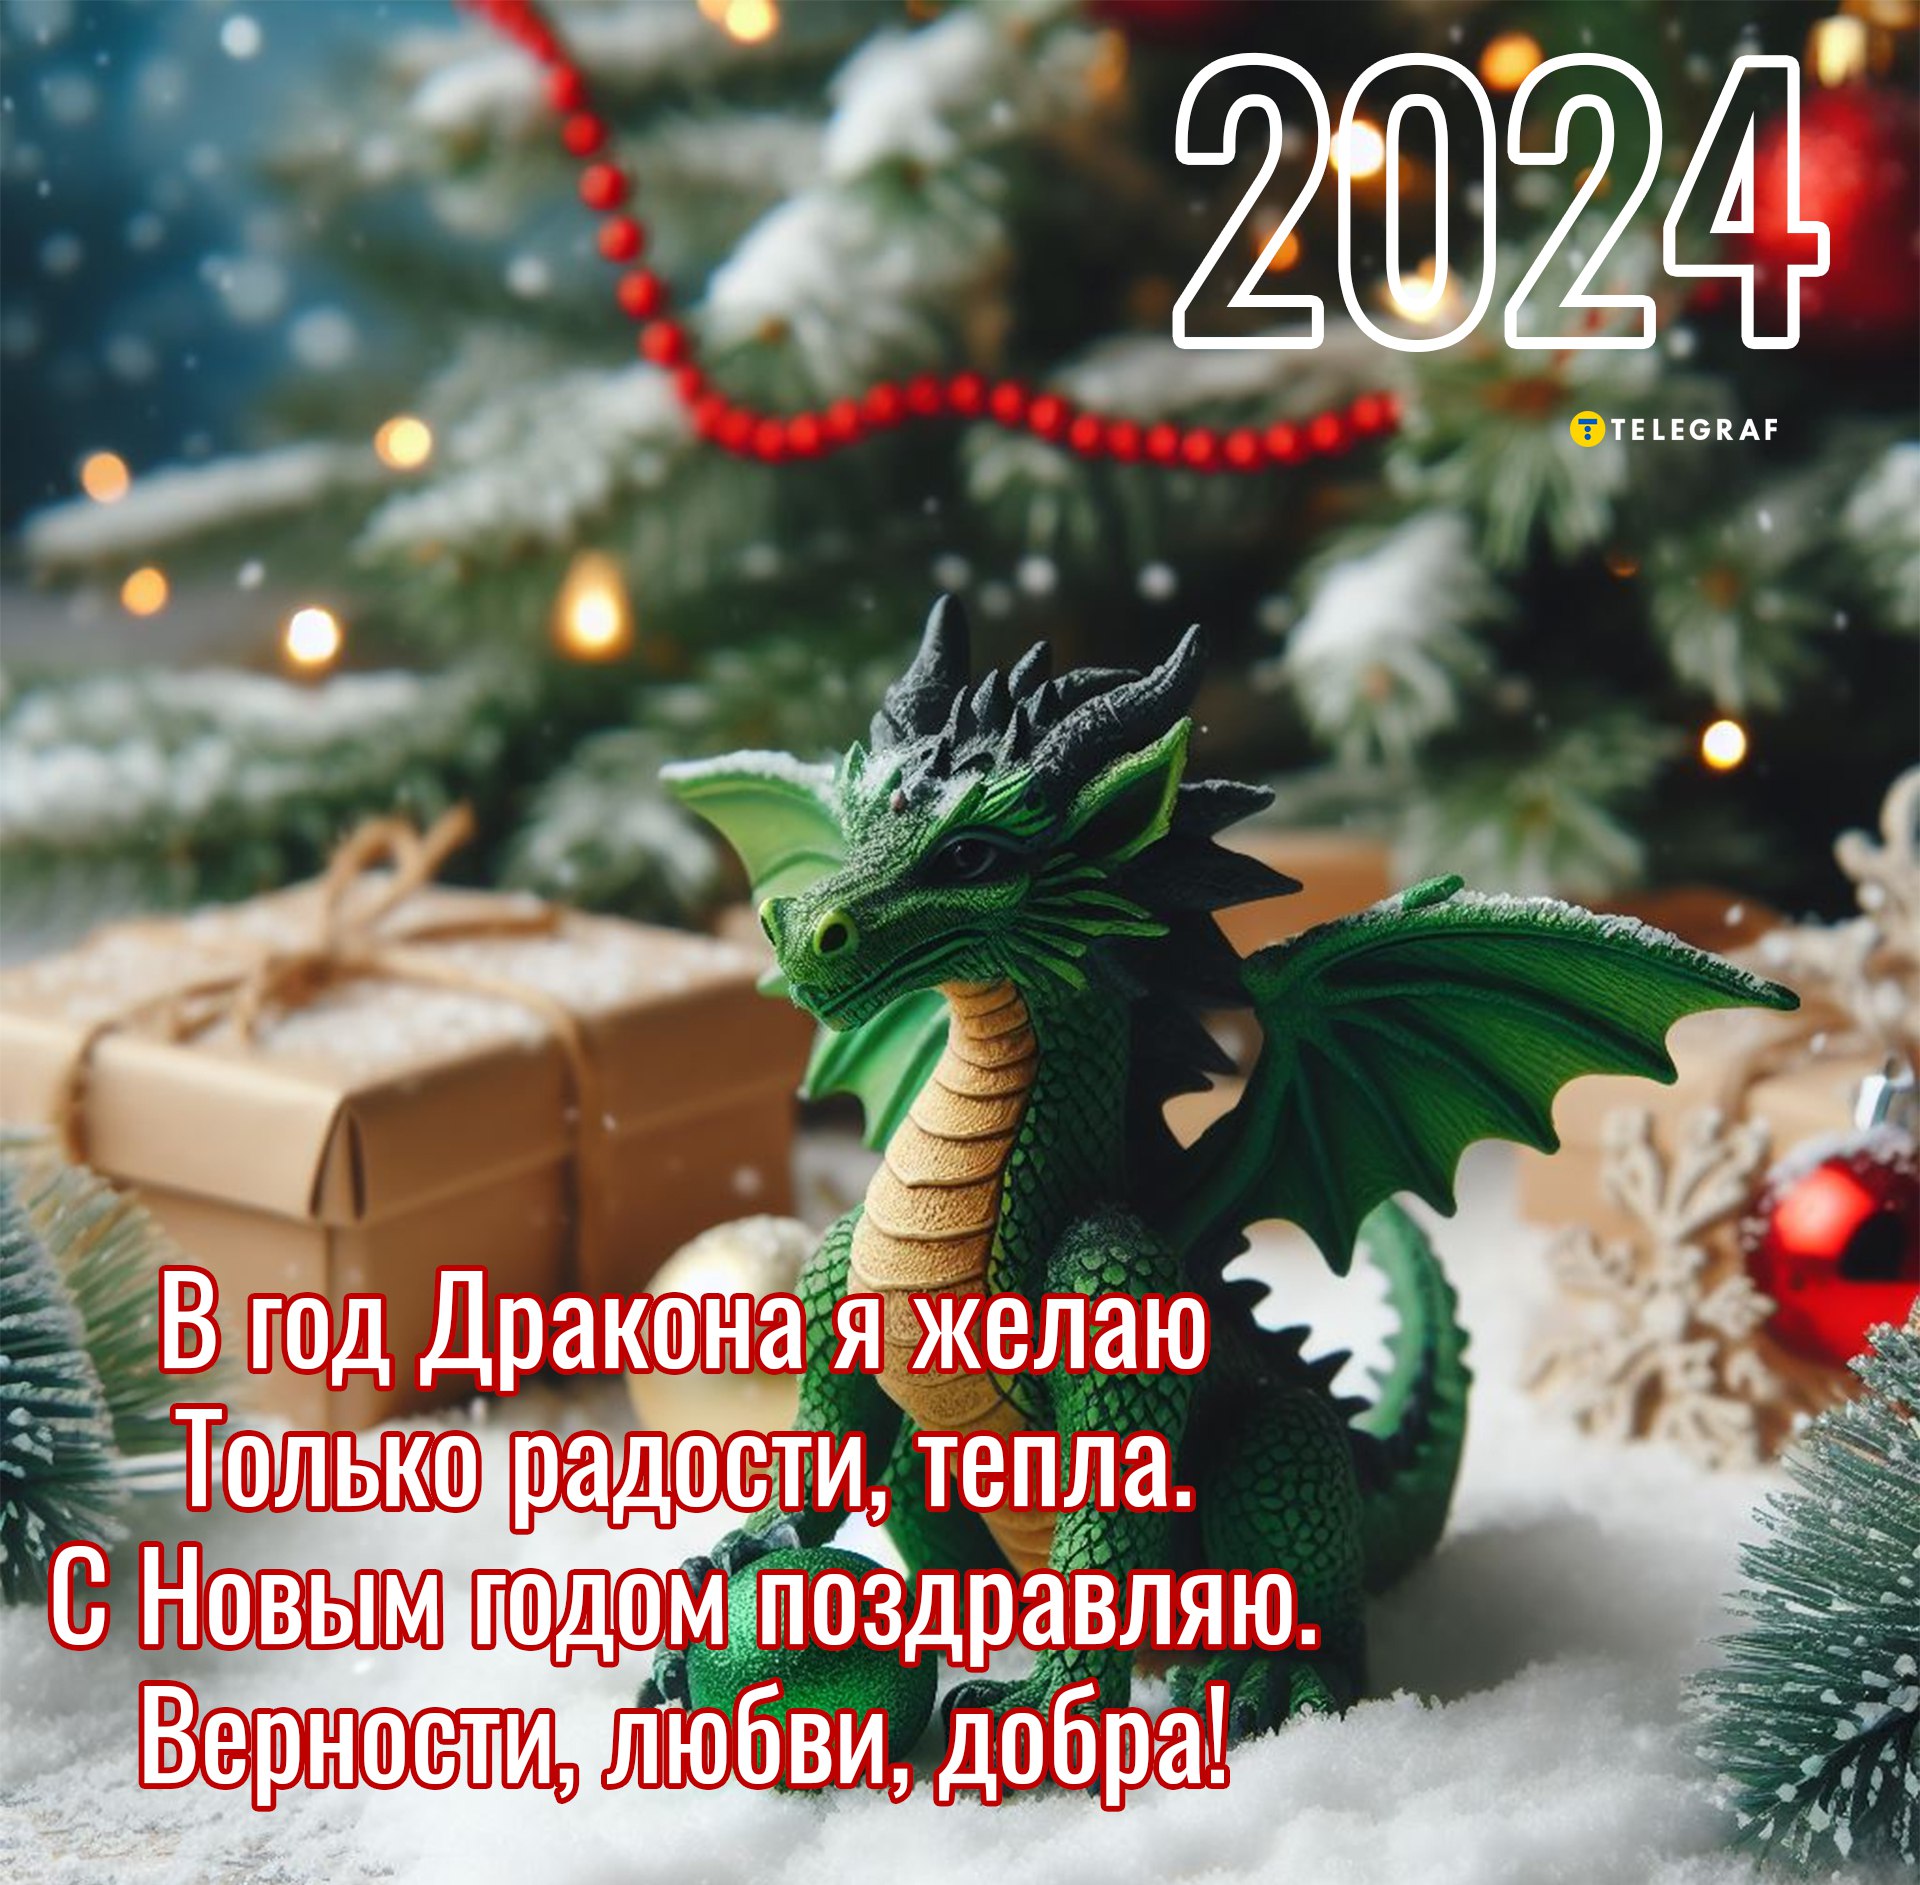 Новогодняя открытка своими руками с символом 2024 года драконом